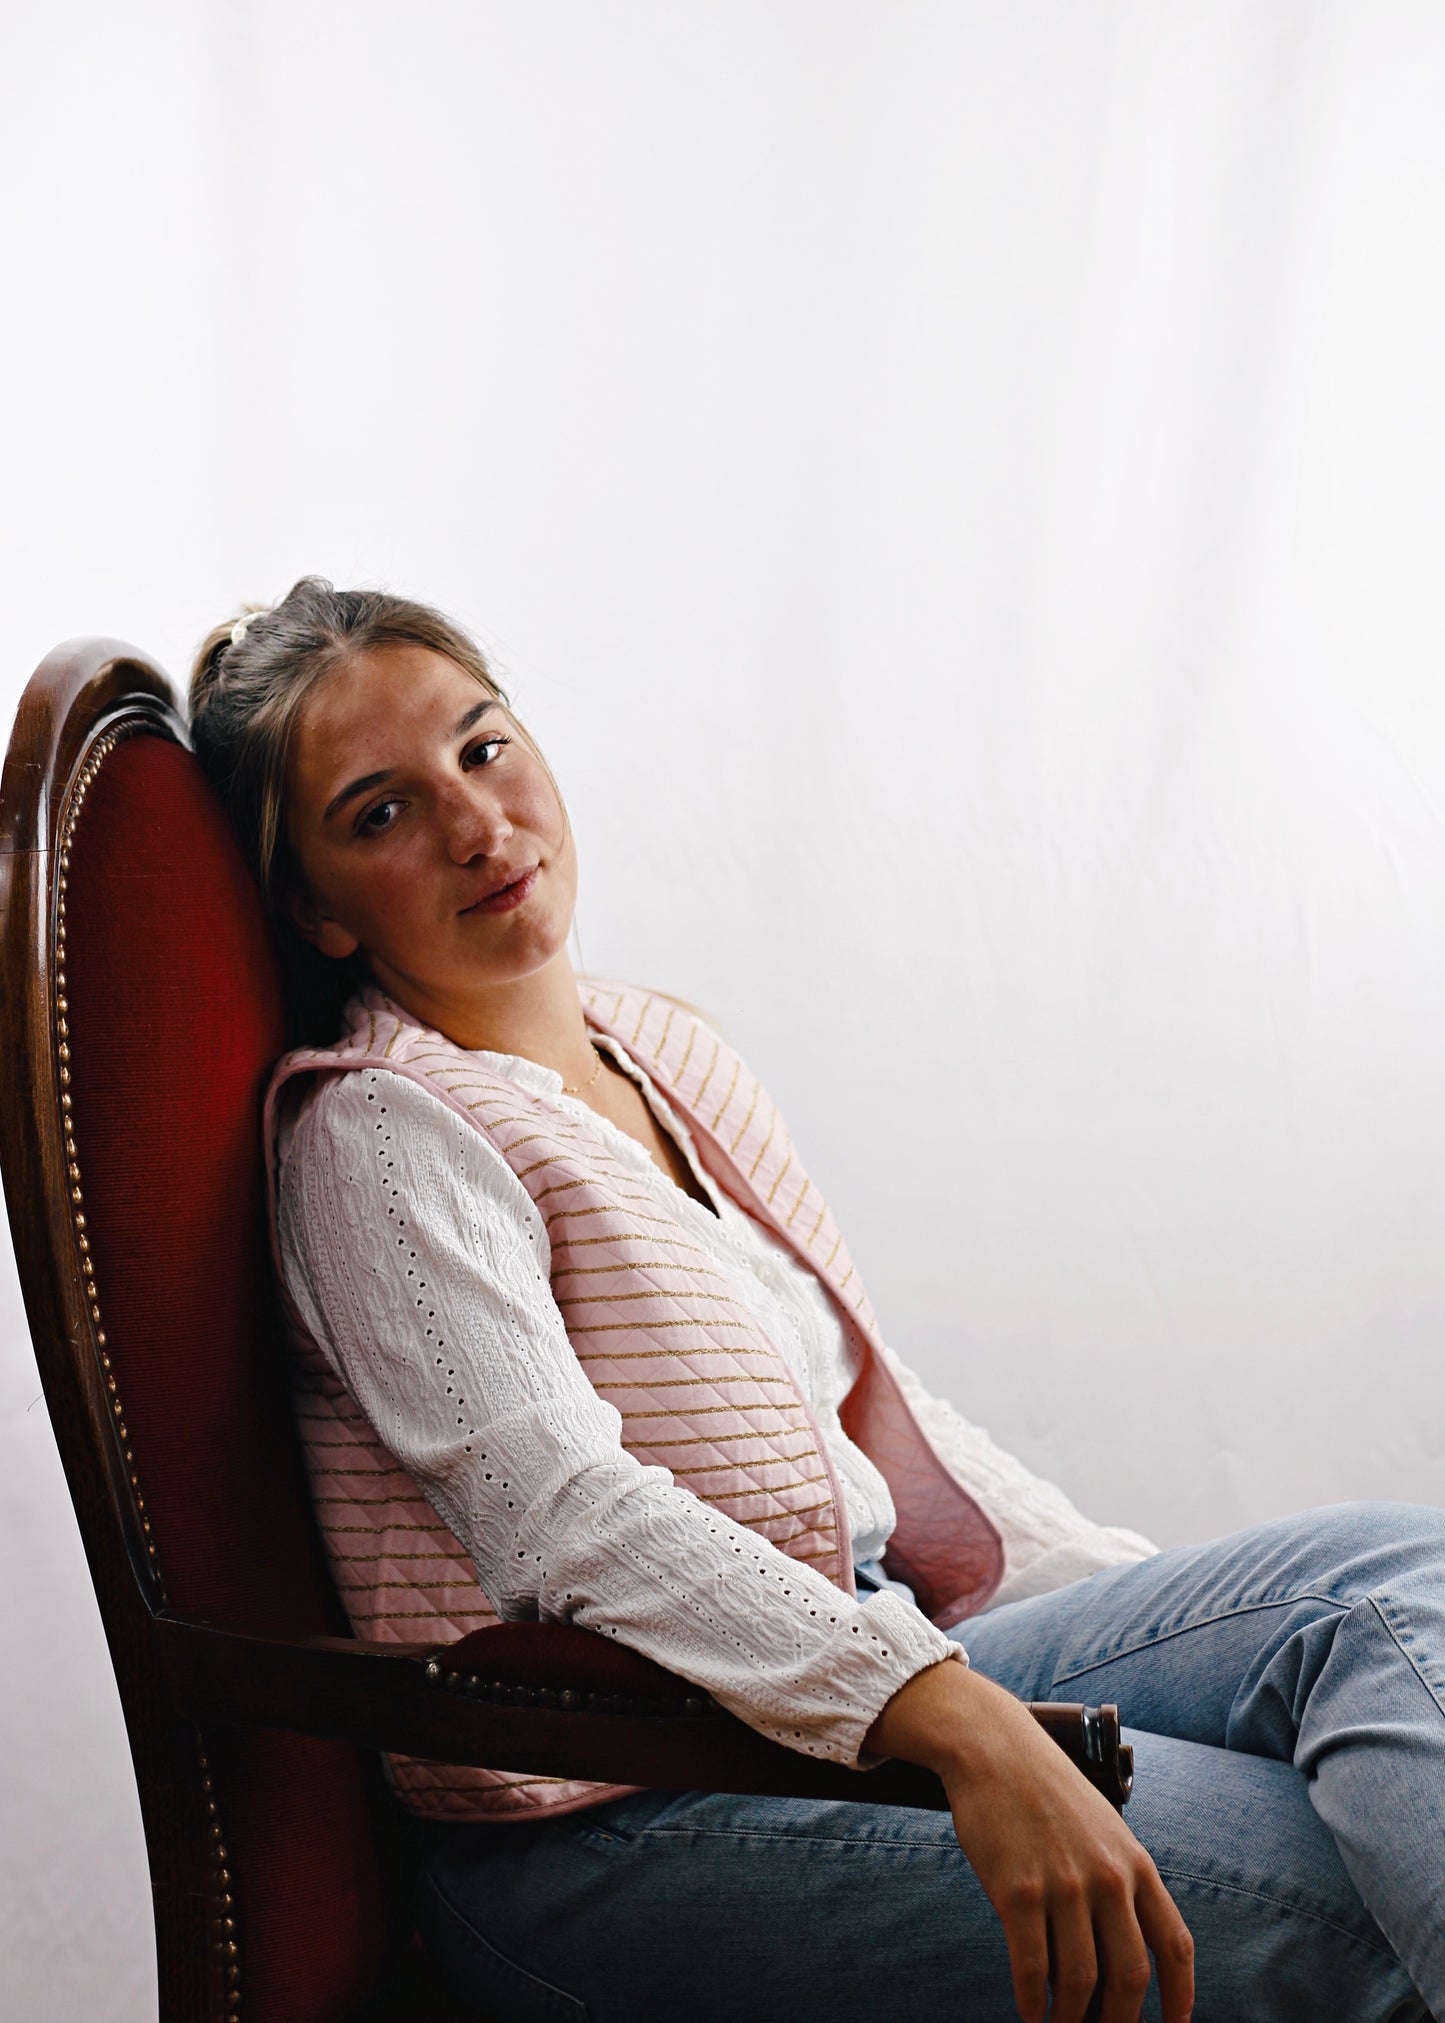 Gilet Alca en tissu molletonné rose réversible, jeune femme assise sur le fauteuil, rêveuse.